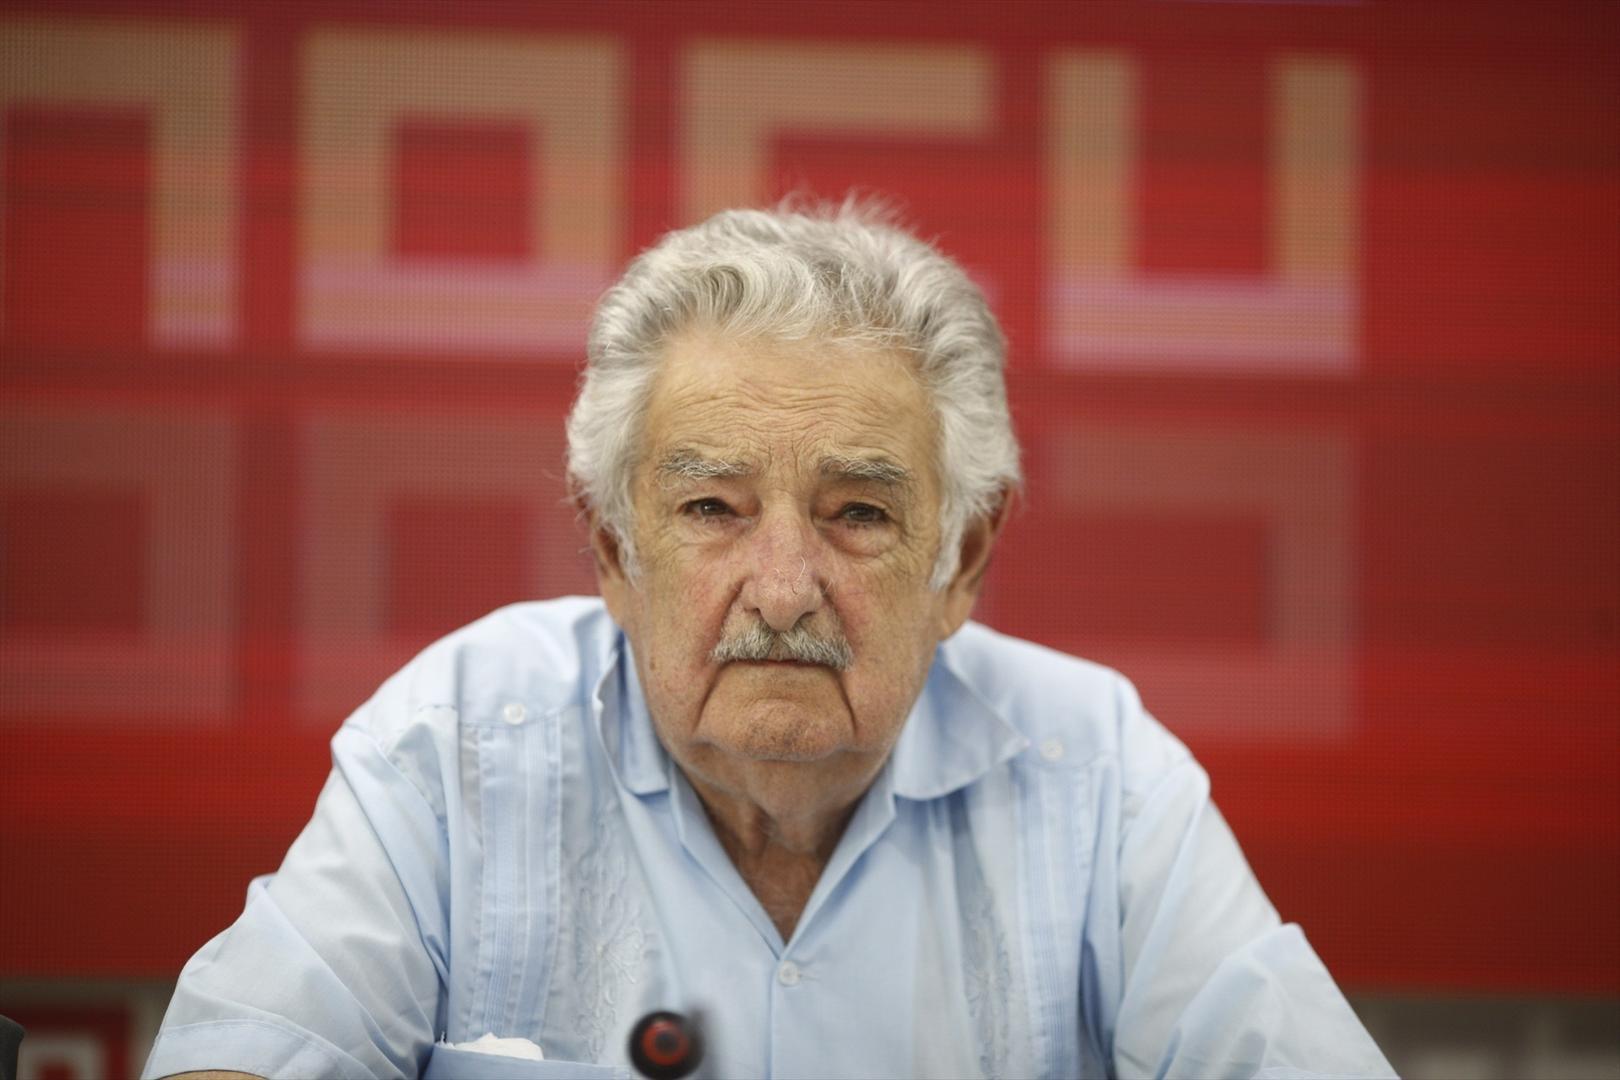 El expresidente de Uruguay José Mujica anuncia que padece un tumor en el esófago